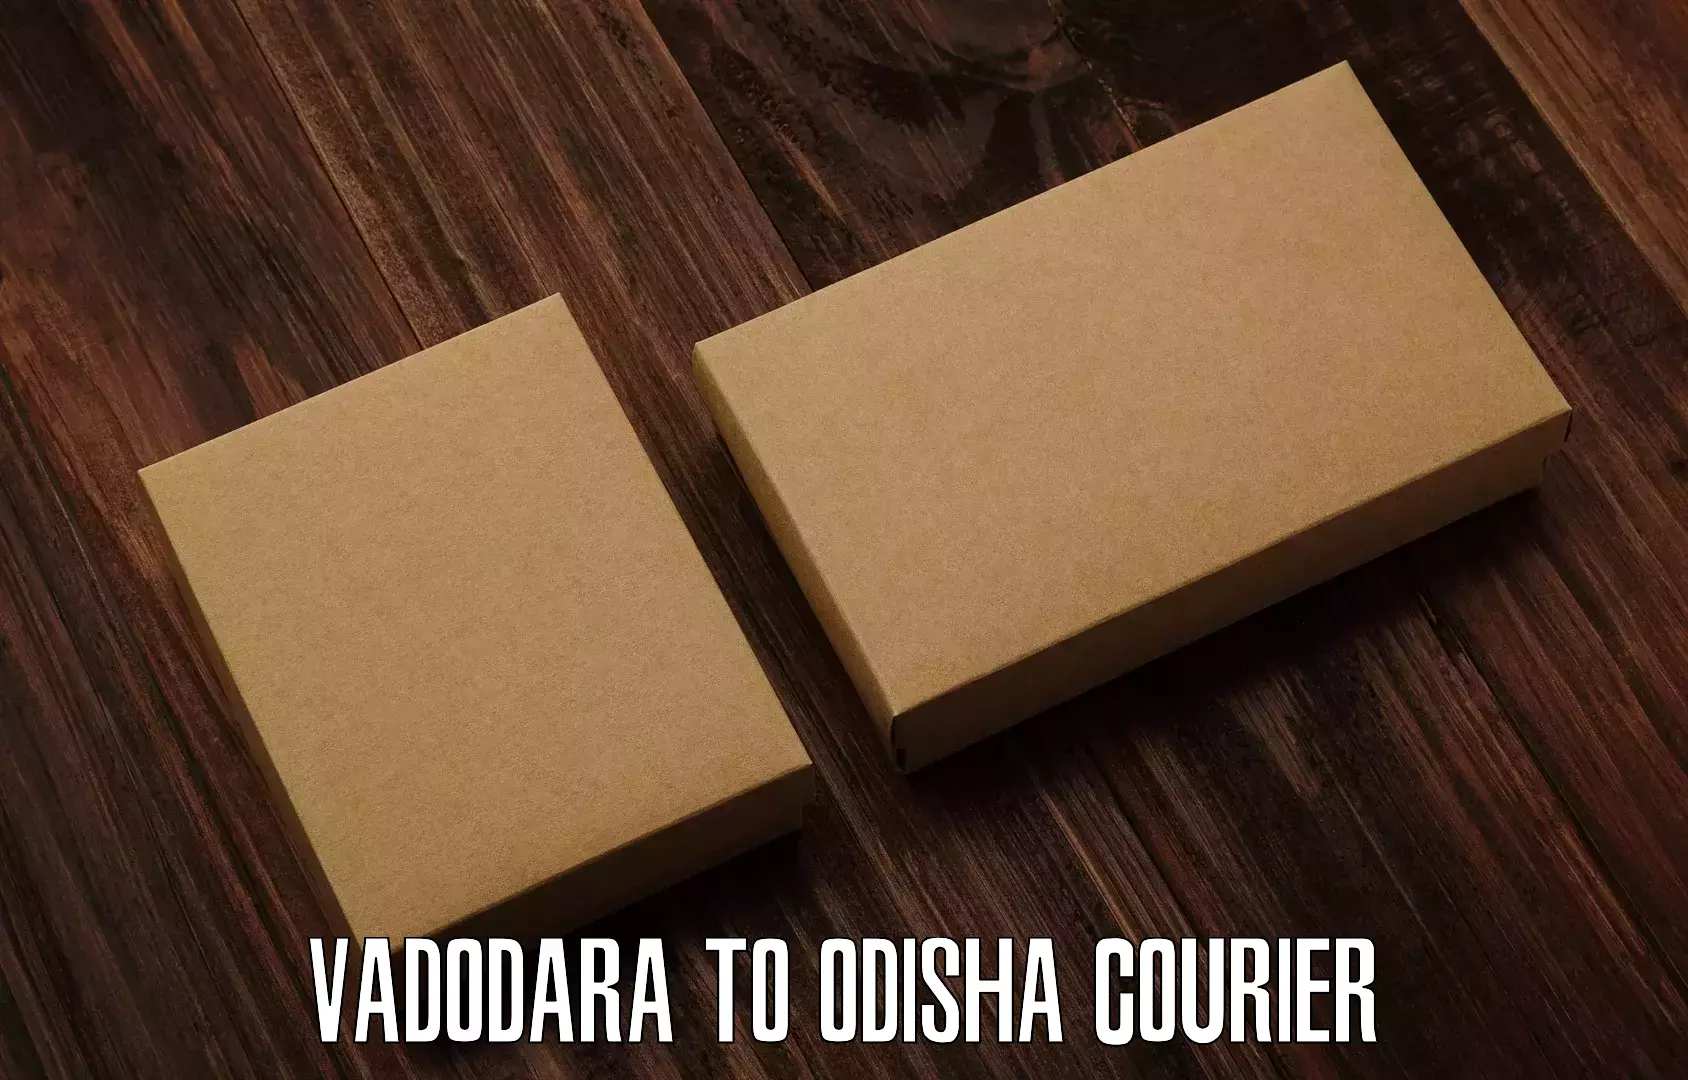 Efficient cargo handling Vadodara to Chatrapur